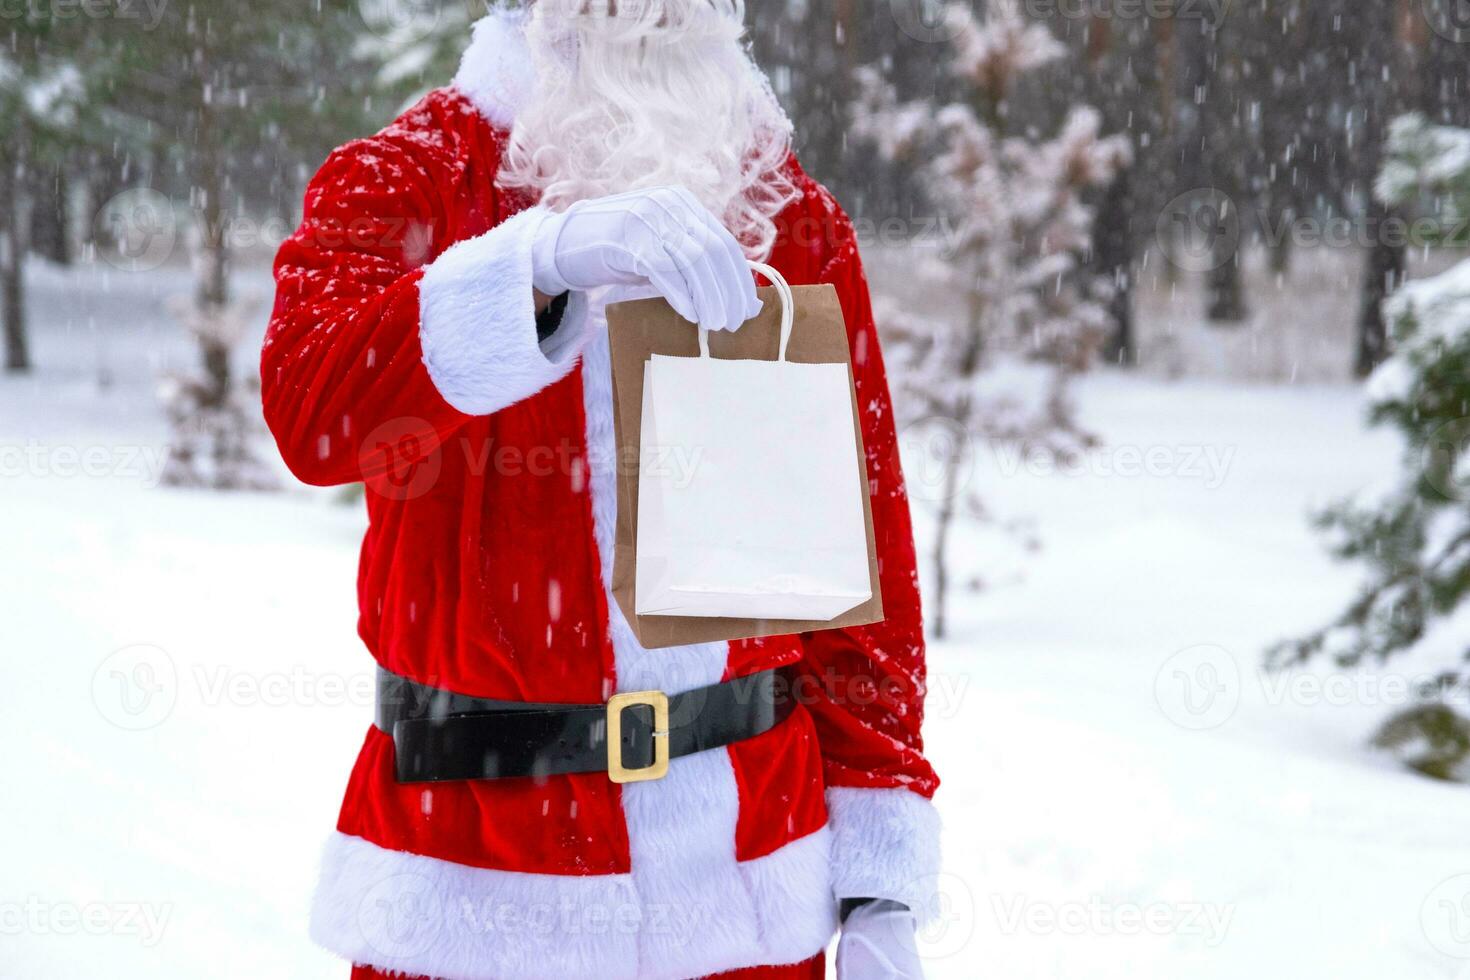 Papa Noel claus al aire libre en invierno y nieve entrega en mano eco papel pantalones con arte regalo, comida entrega. compras, embalaje reciclaje, hecho a mano, entrega para Navidad y nuevo año foto